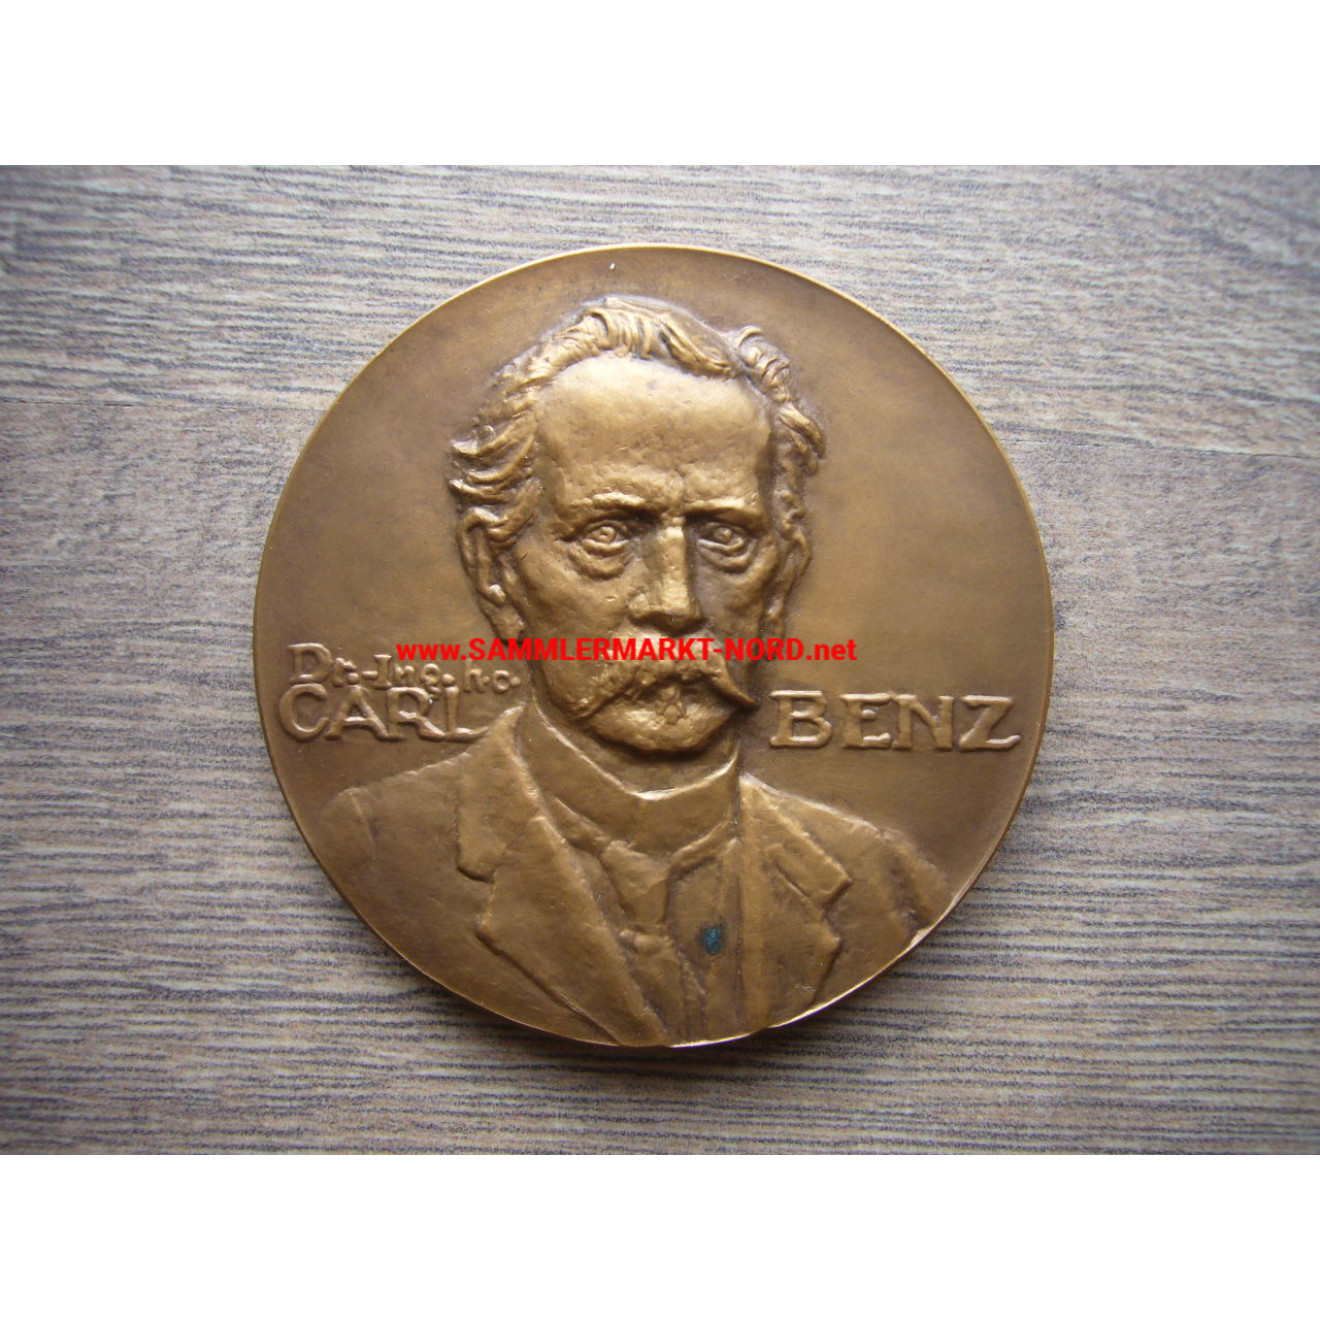 Dr. Carl Benz - Große bronzene Gedenkmedaille